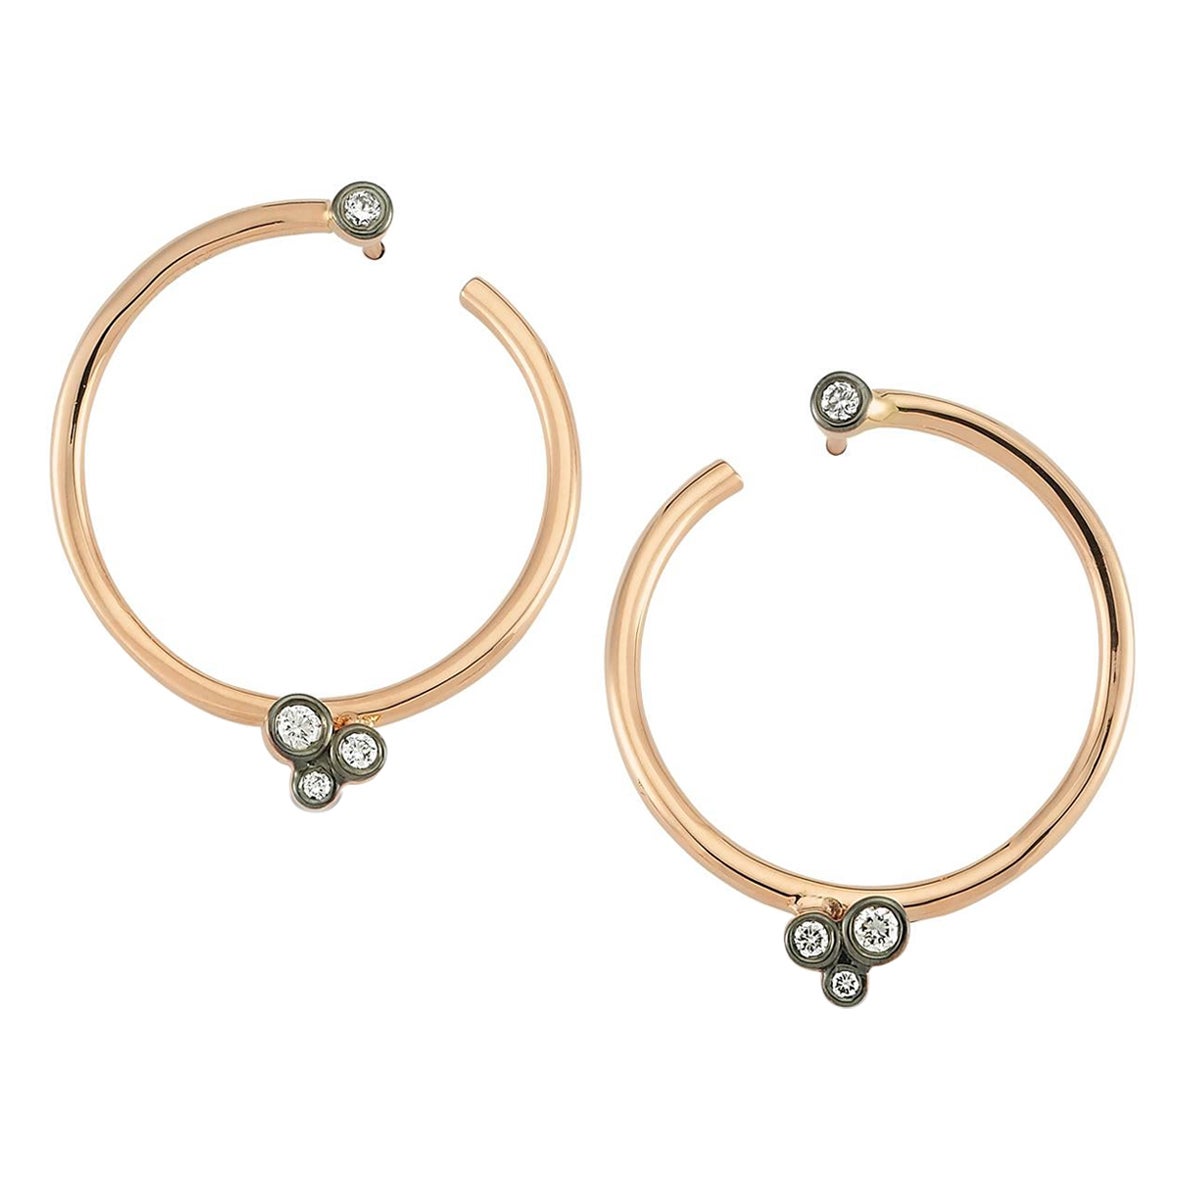 Waves Hoop Earrings with White Diamond in 14k Rose Gold by Selda Jewellery